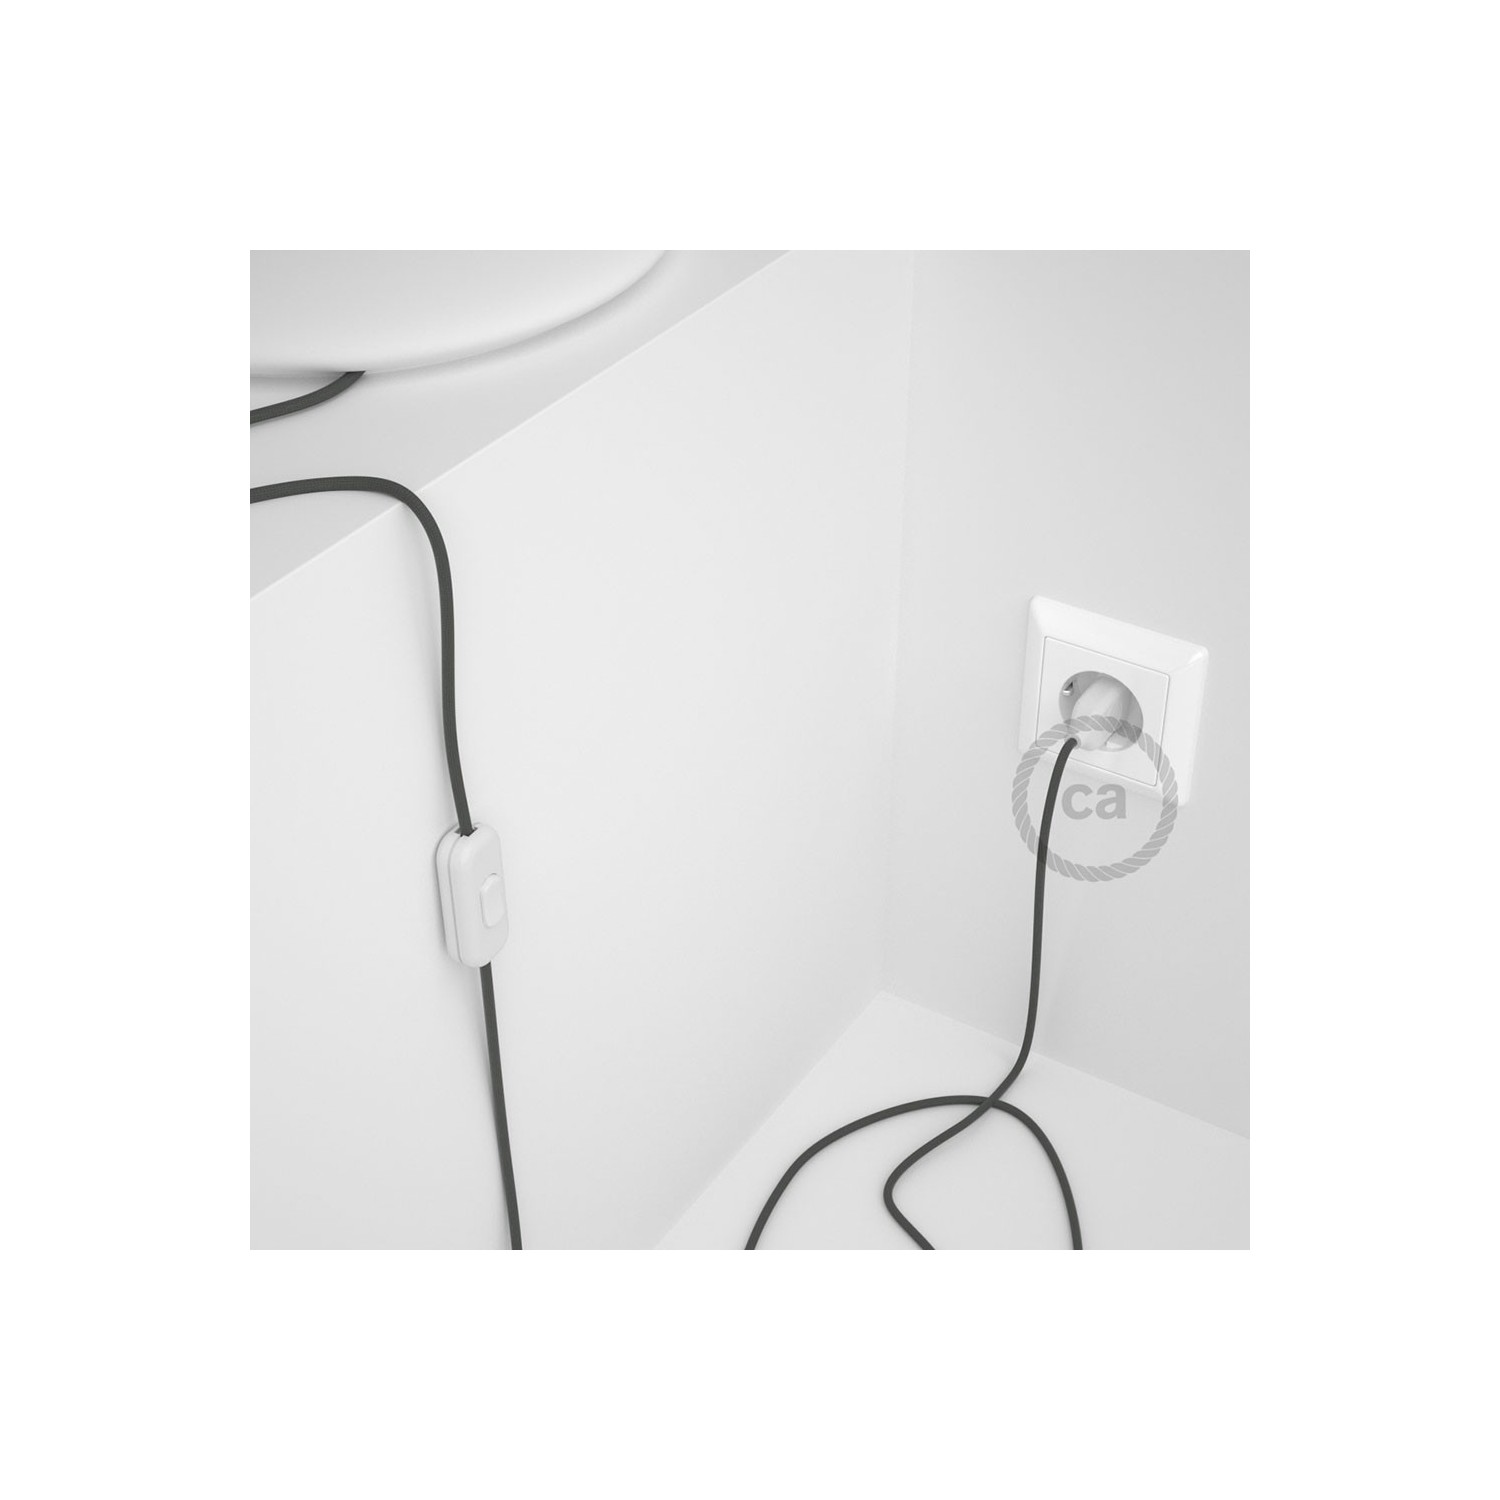 Cordon pour lampe, câble RM03 Effet Soie Gris 1,80 m. Choisissez la couleur de la fiche et de l'interrupteur!